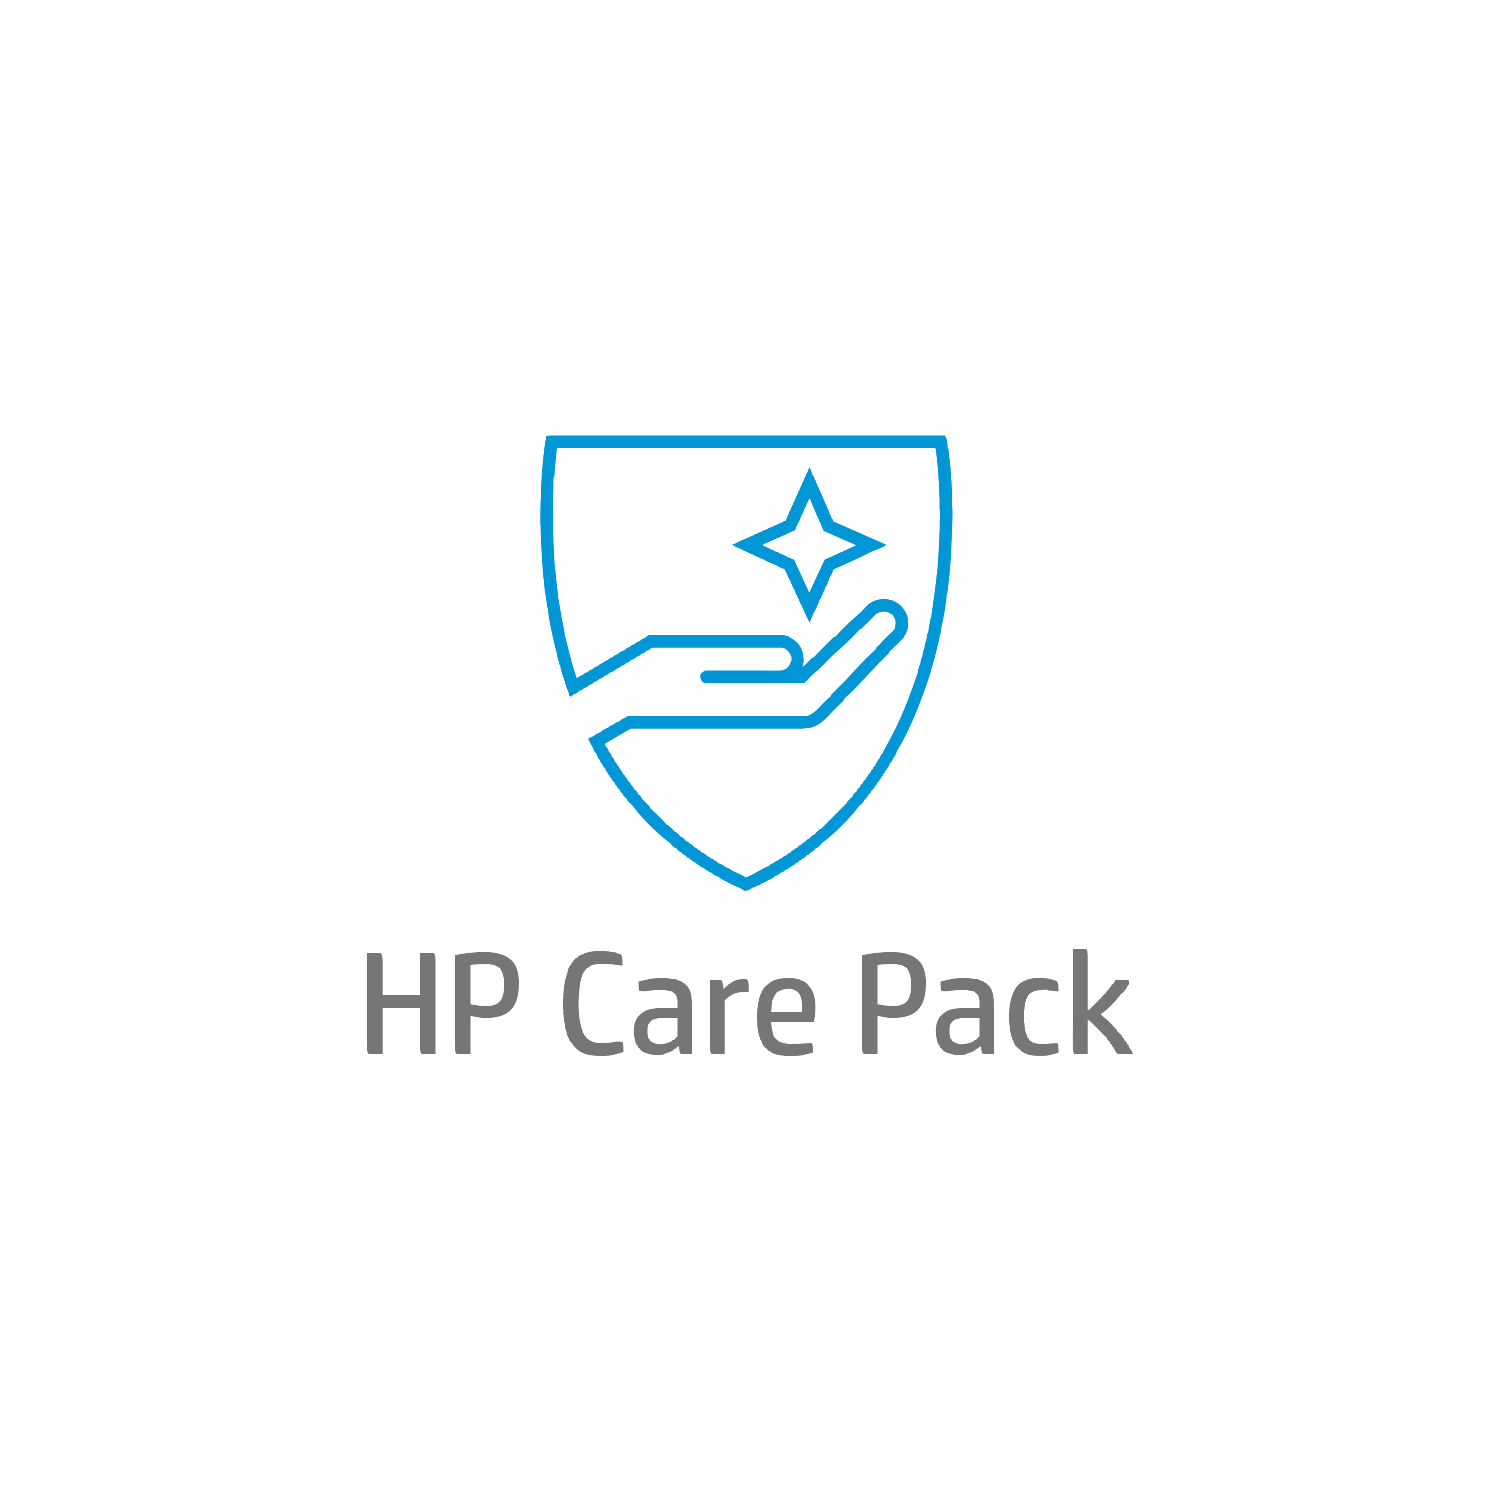 Bild von HP Care 4 Jahre Hardware-Support mit Einbehaltung defekter Medienträger (DMR) für Mobile Workstations - Externe Reparatur - Außerhalb des Kundenstandorts - Unter Garantie - Standardarbeitstage - 9 Stunden - 4 Jahre - Reparatur innerhalb von 3–7 Werktagen